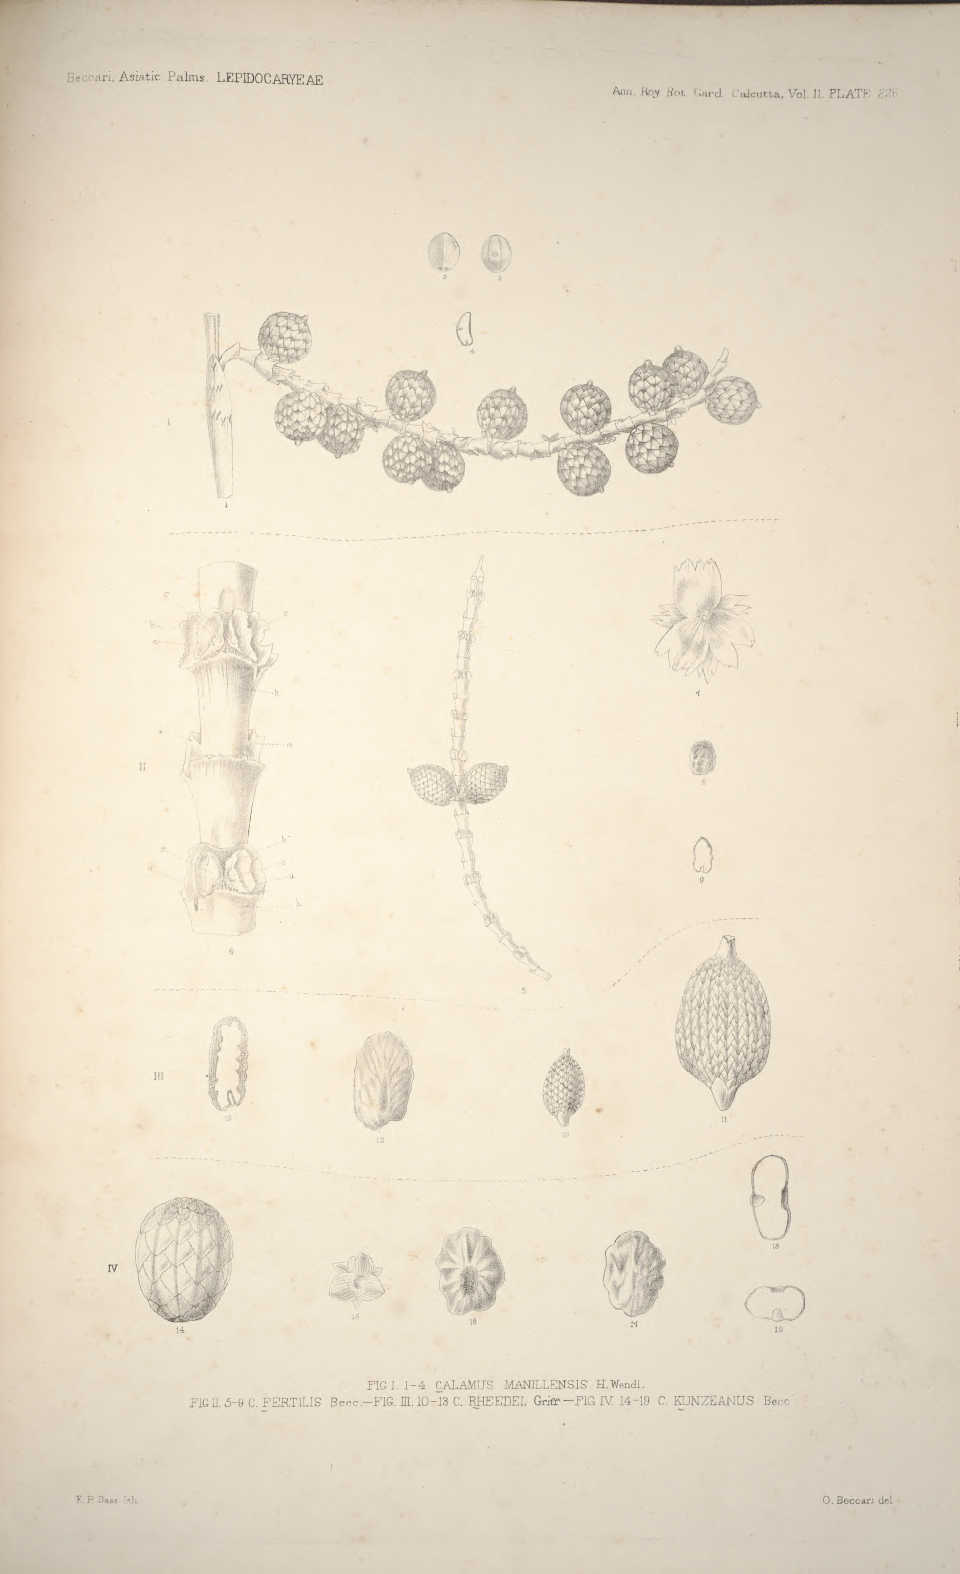 Calamus manillensis